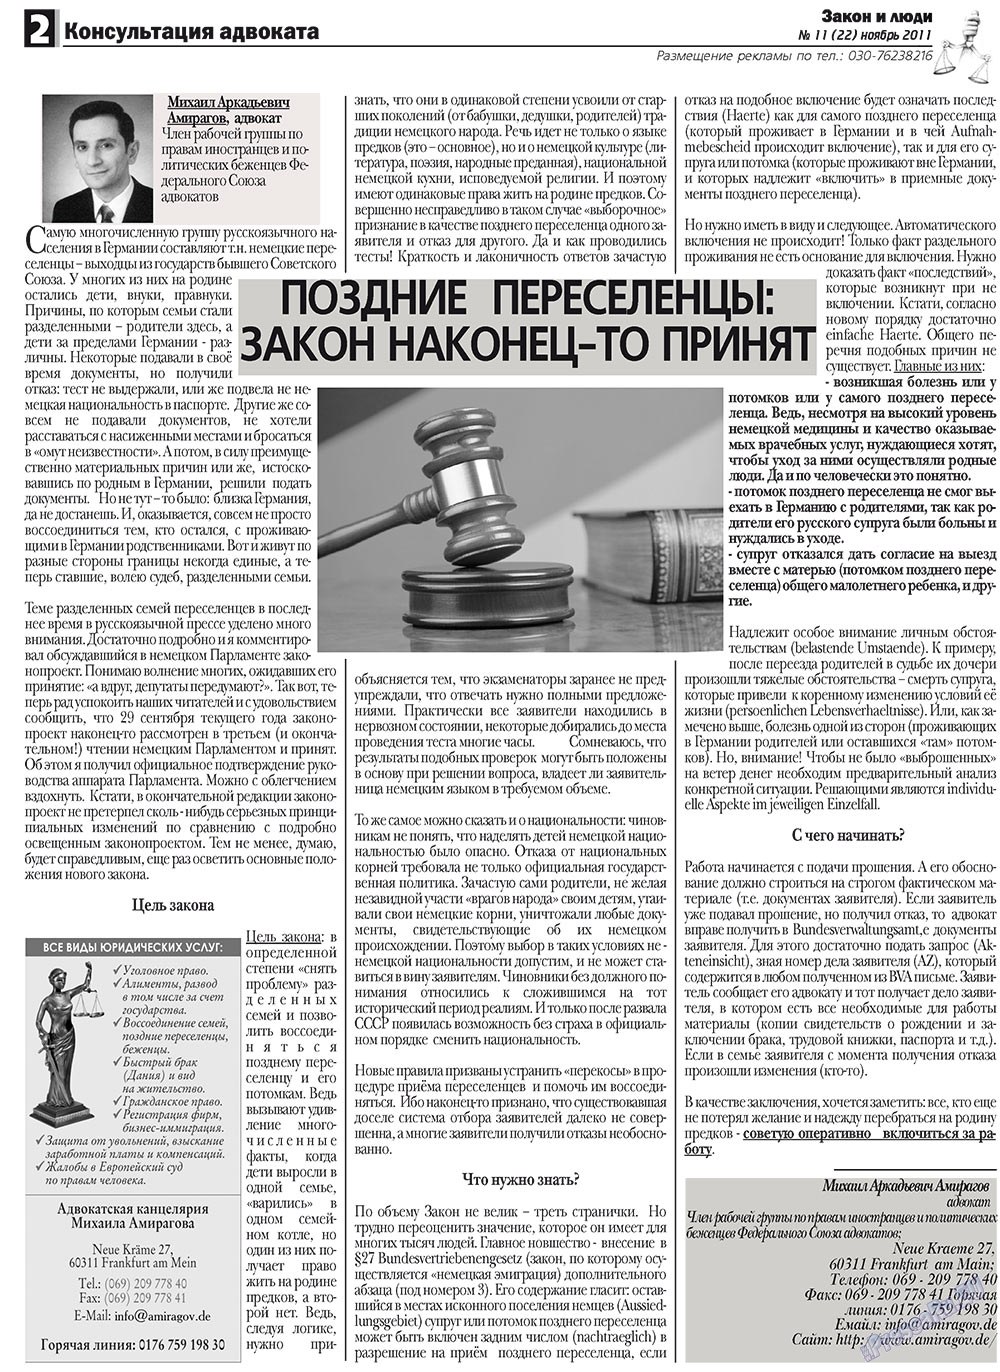 Закон и люди (газета). 2011 год, номер 11, стр. 2